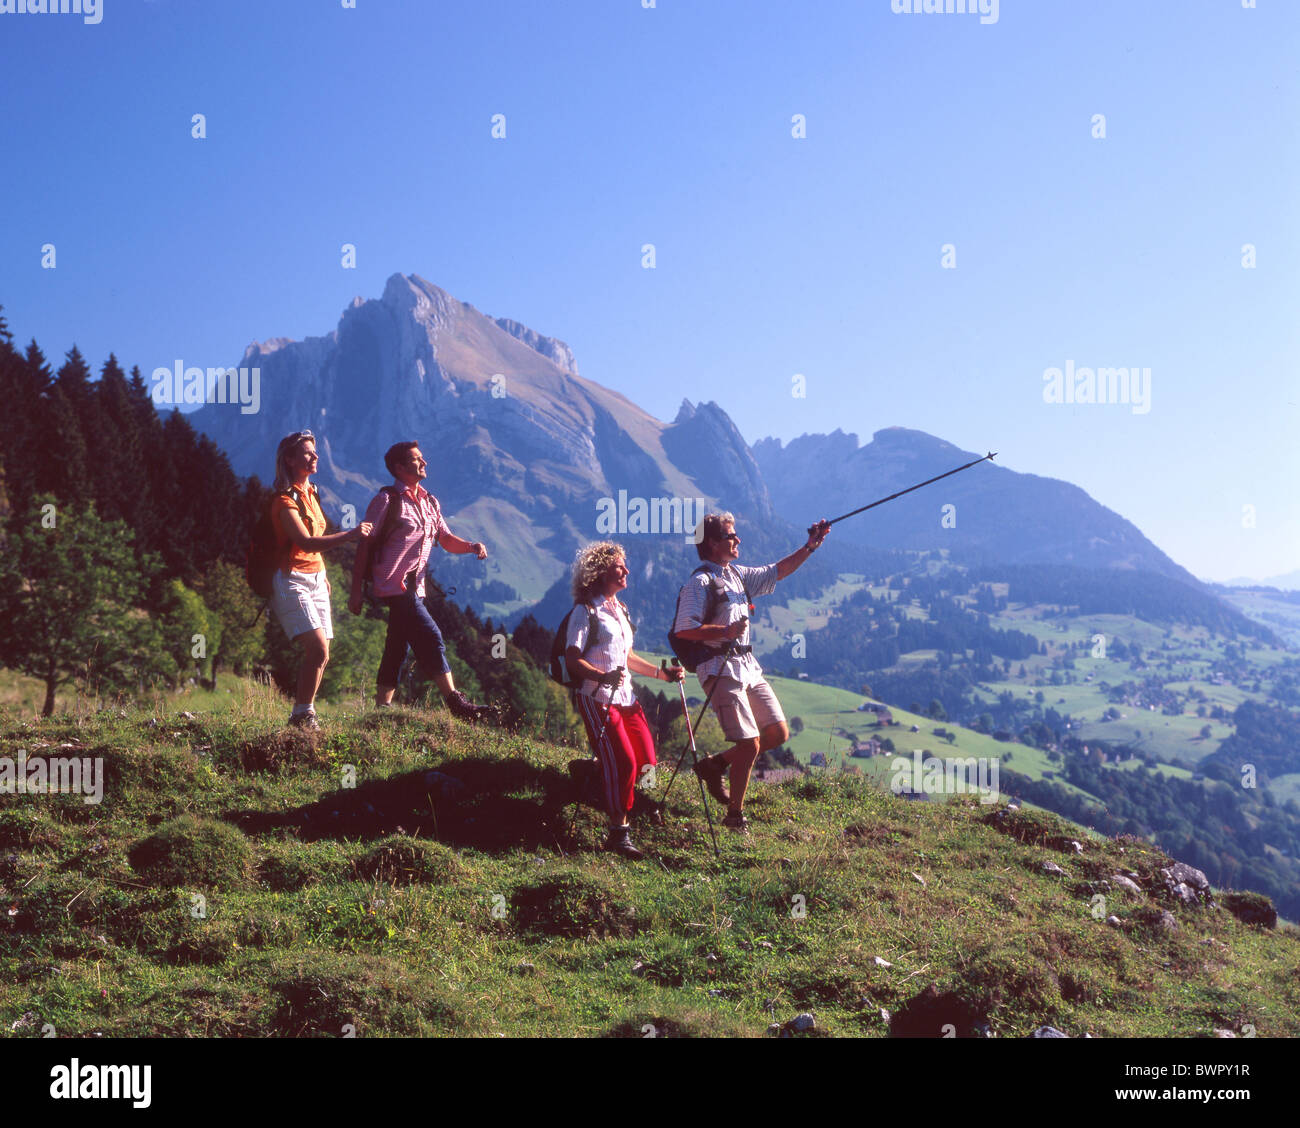 Svizzera Europa Alt St.Johann Cantone San Gallo Toggenburg escursionisti escursionista escursionismo quattro persone Landscap gruppo Foto Stock